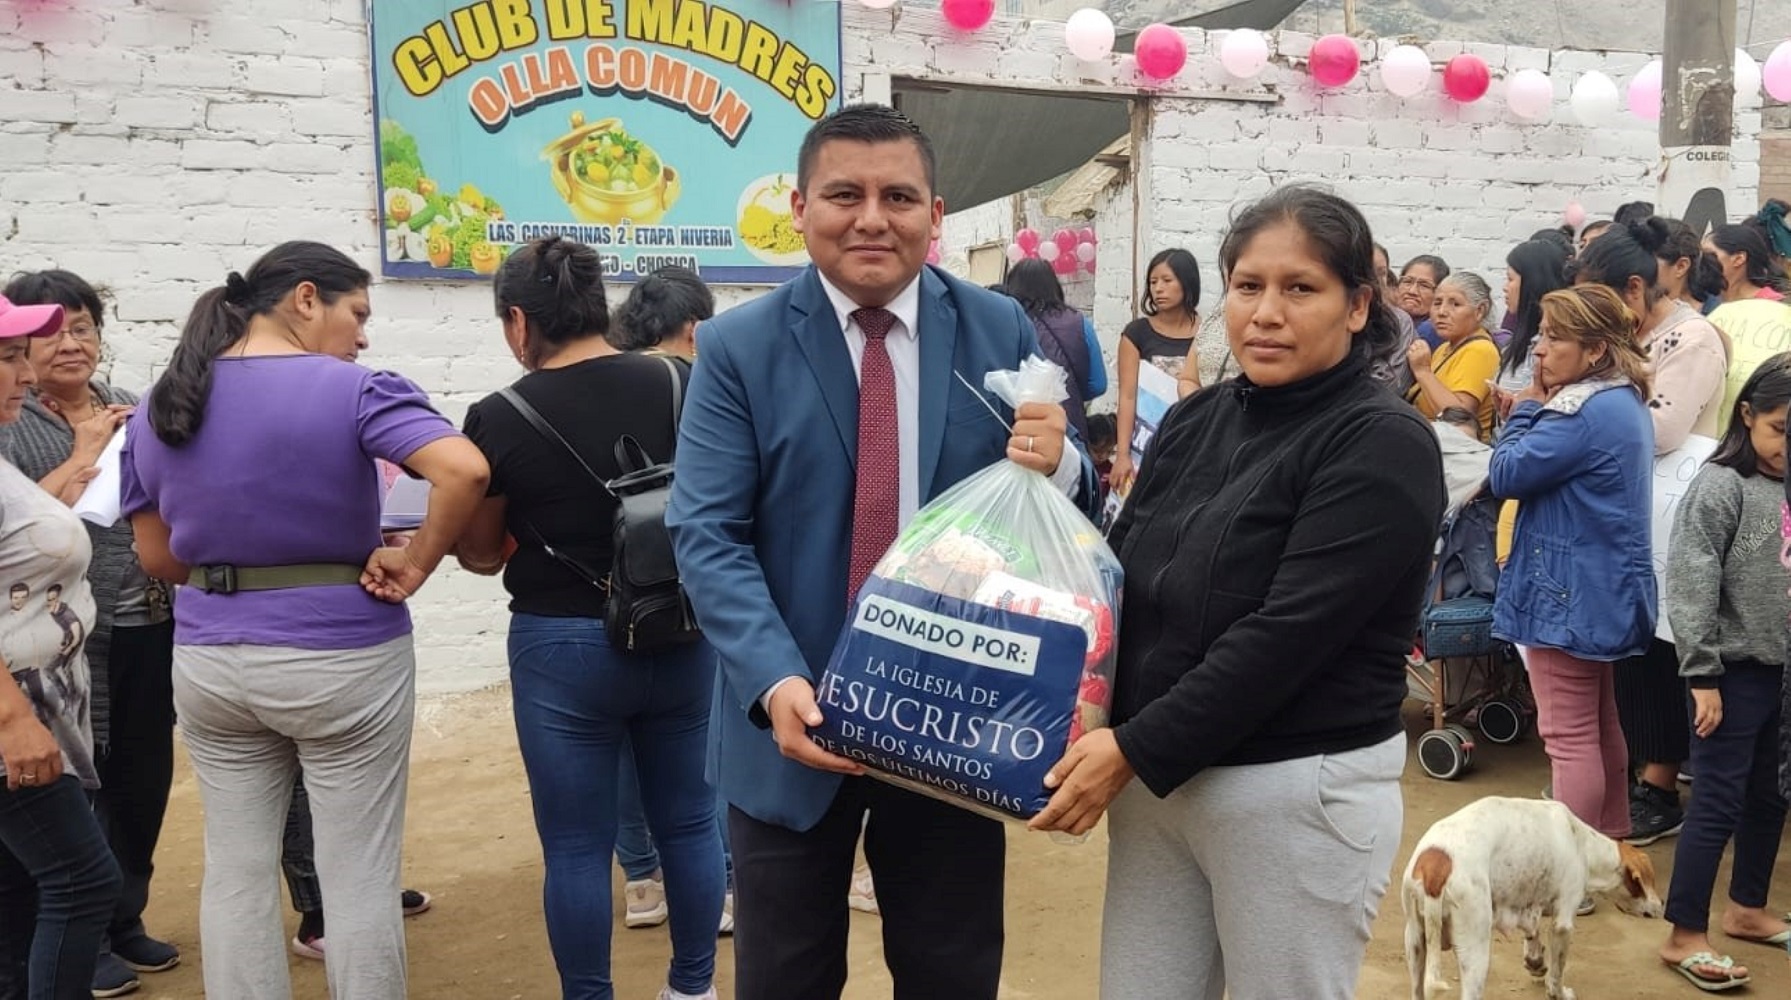 Iglesia de Jesucristo entrega ayuda humanitaria en Lurigancho-Chosica en apoyo a población de Nieveria en Lurigancho-Chosica.